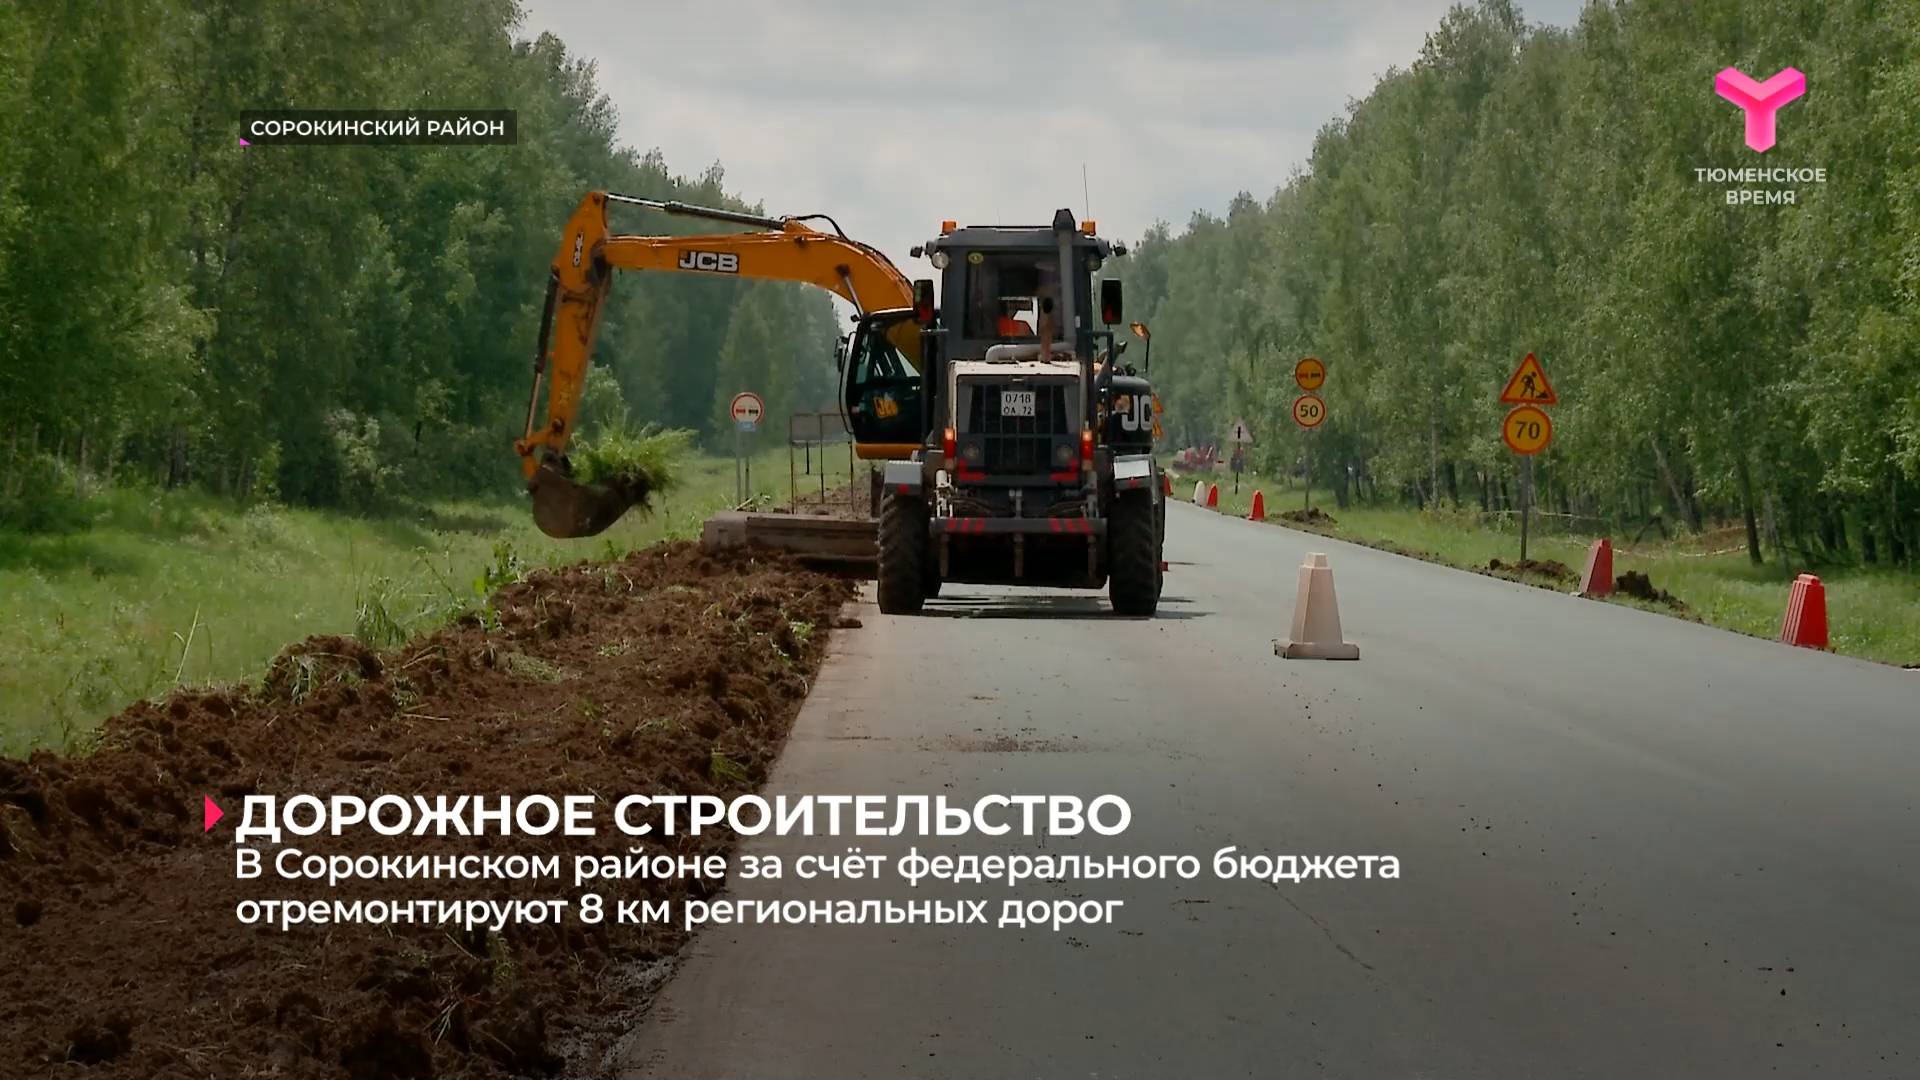 В Сорокинском районе за счёт федерального бюджета отремонтируют 8 км региональных дорог